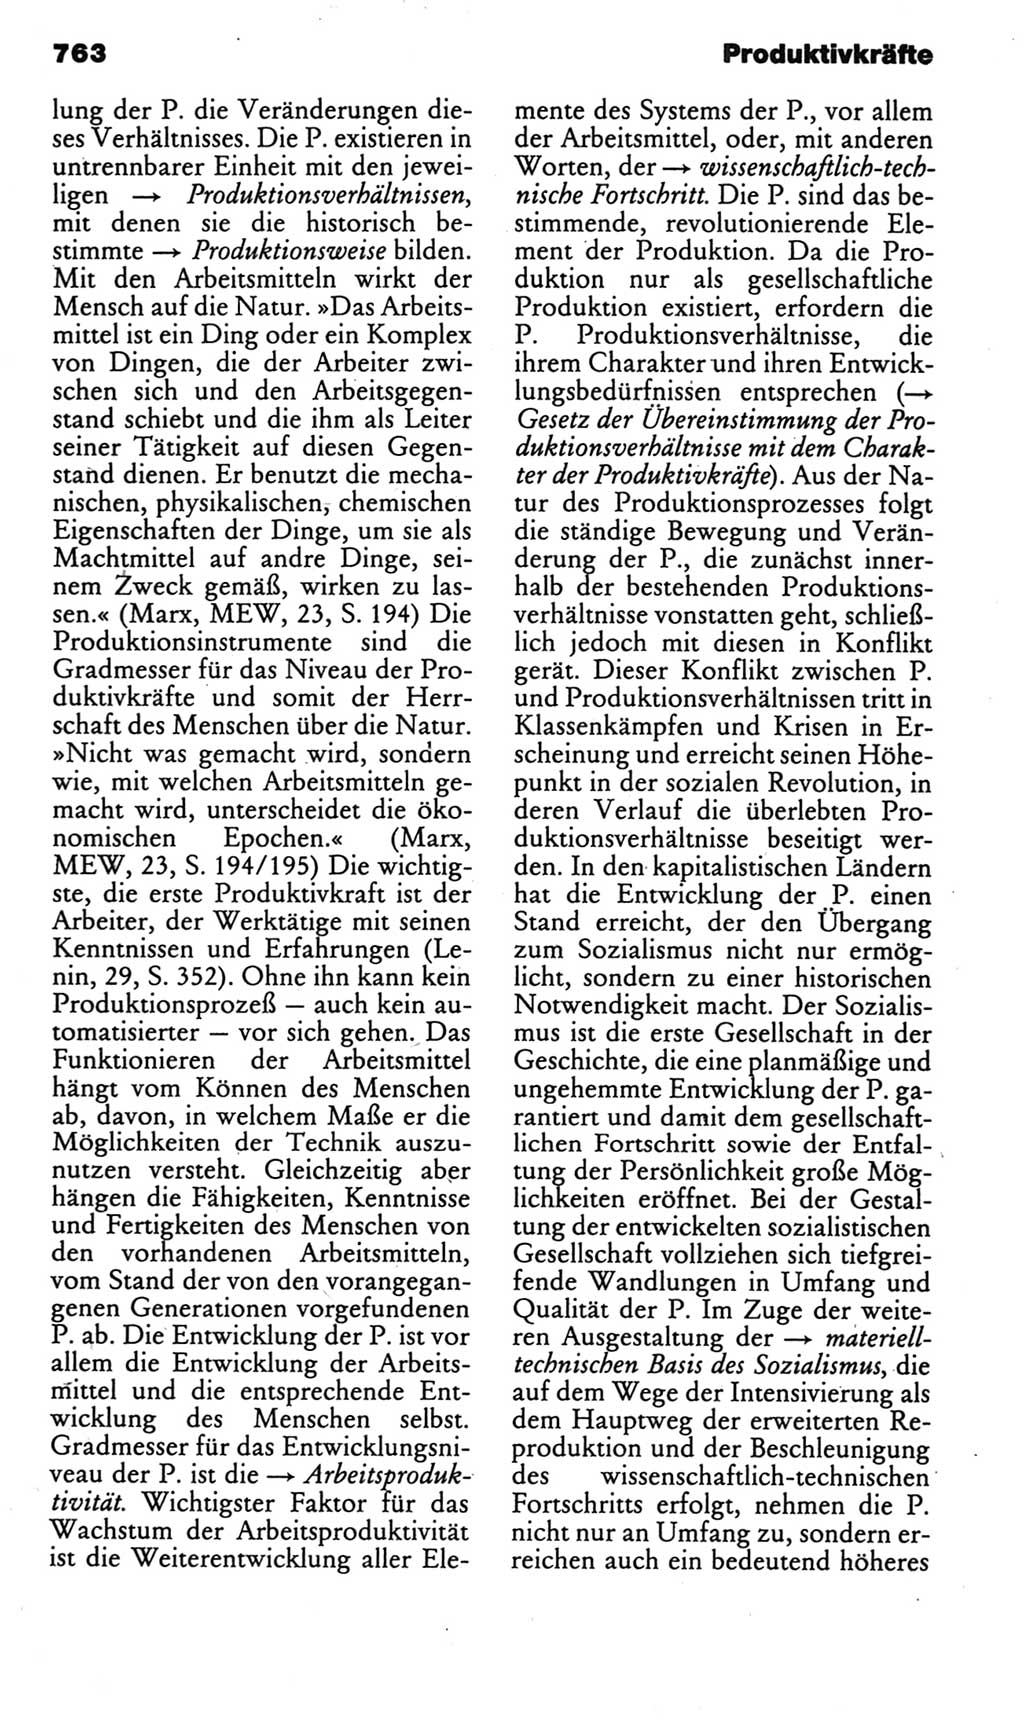 Kleines politisches Wörterbuch [Deutsche Demokratische Republik (DDR)] 1985, Seite 763 (Kl. pol. Wb. DDR 1985, S. 763)